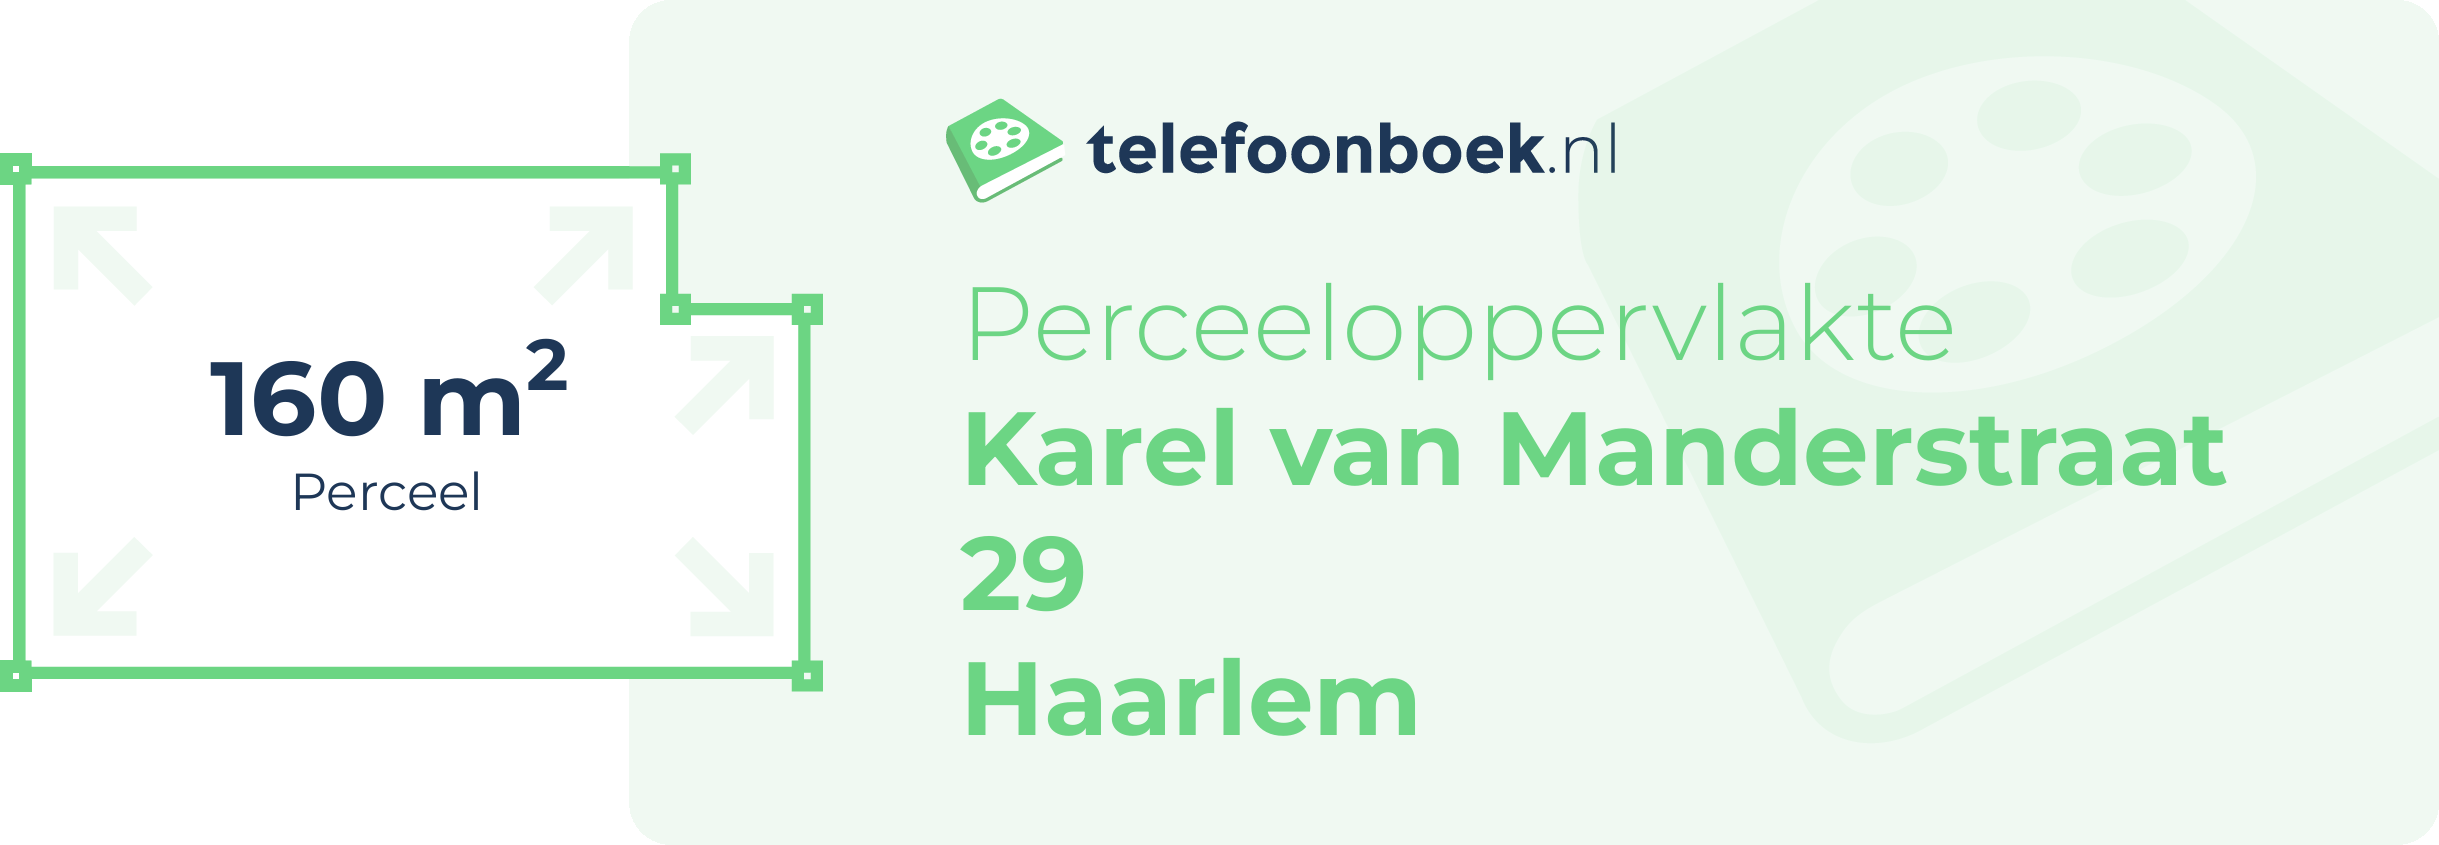 Perceeloppervlakte Karel Van Manderstraat 29 Haarlem